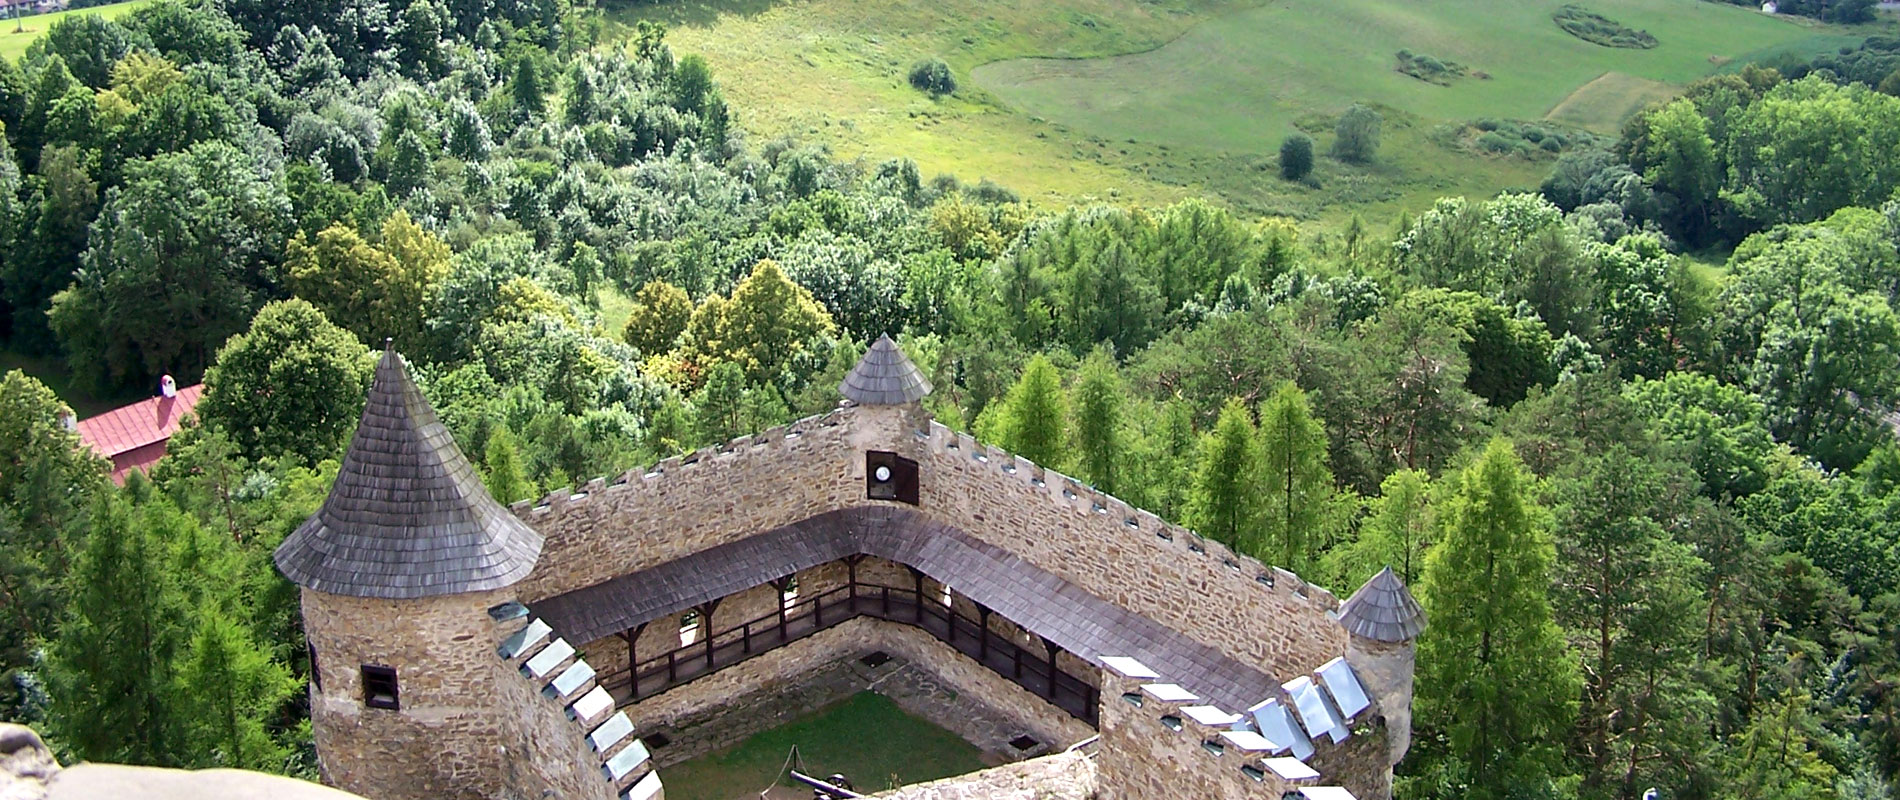 Nad údolím rieky Poprad sa majestátne vyníma veľká renesančná pevnosť Ľubovniansky hrad